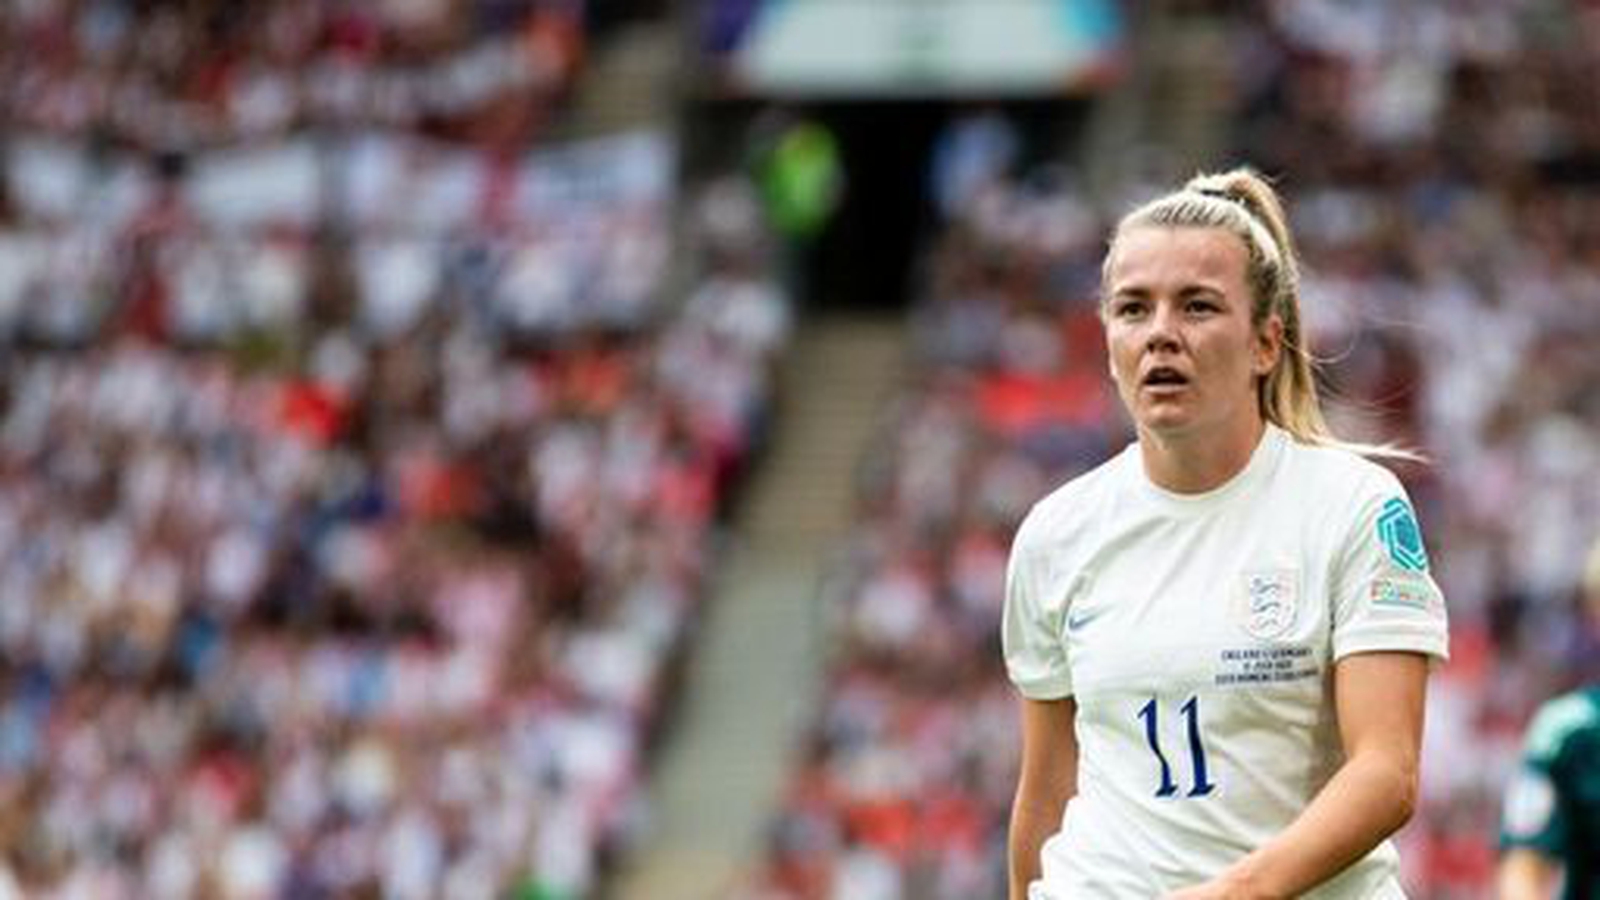 Der englische Frauenfußballstar tritt bei Hollyoaks auf